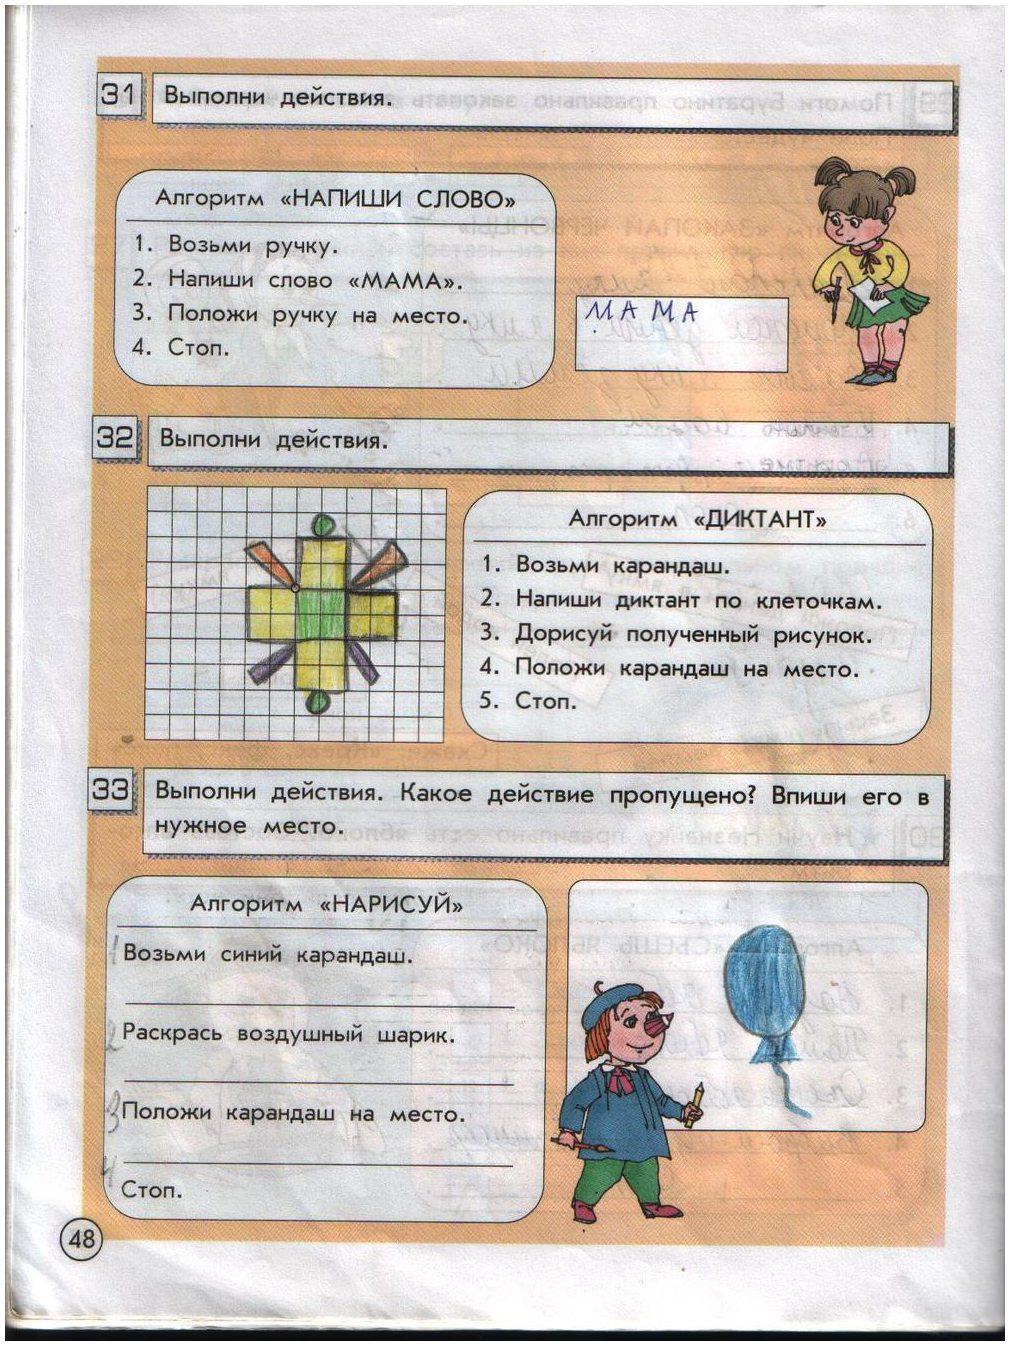 гдз 2 класс информатика часть 1 Горячев, Горина страница 48